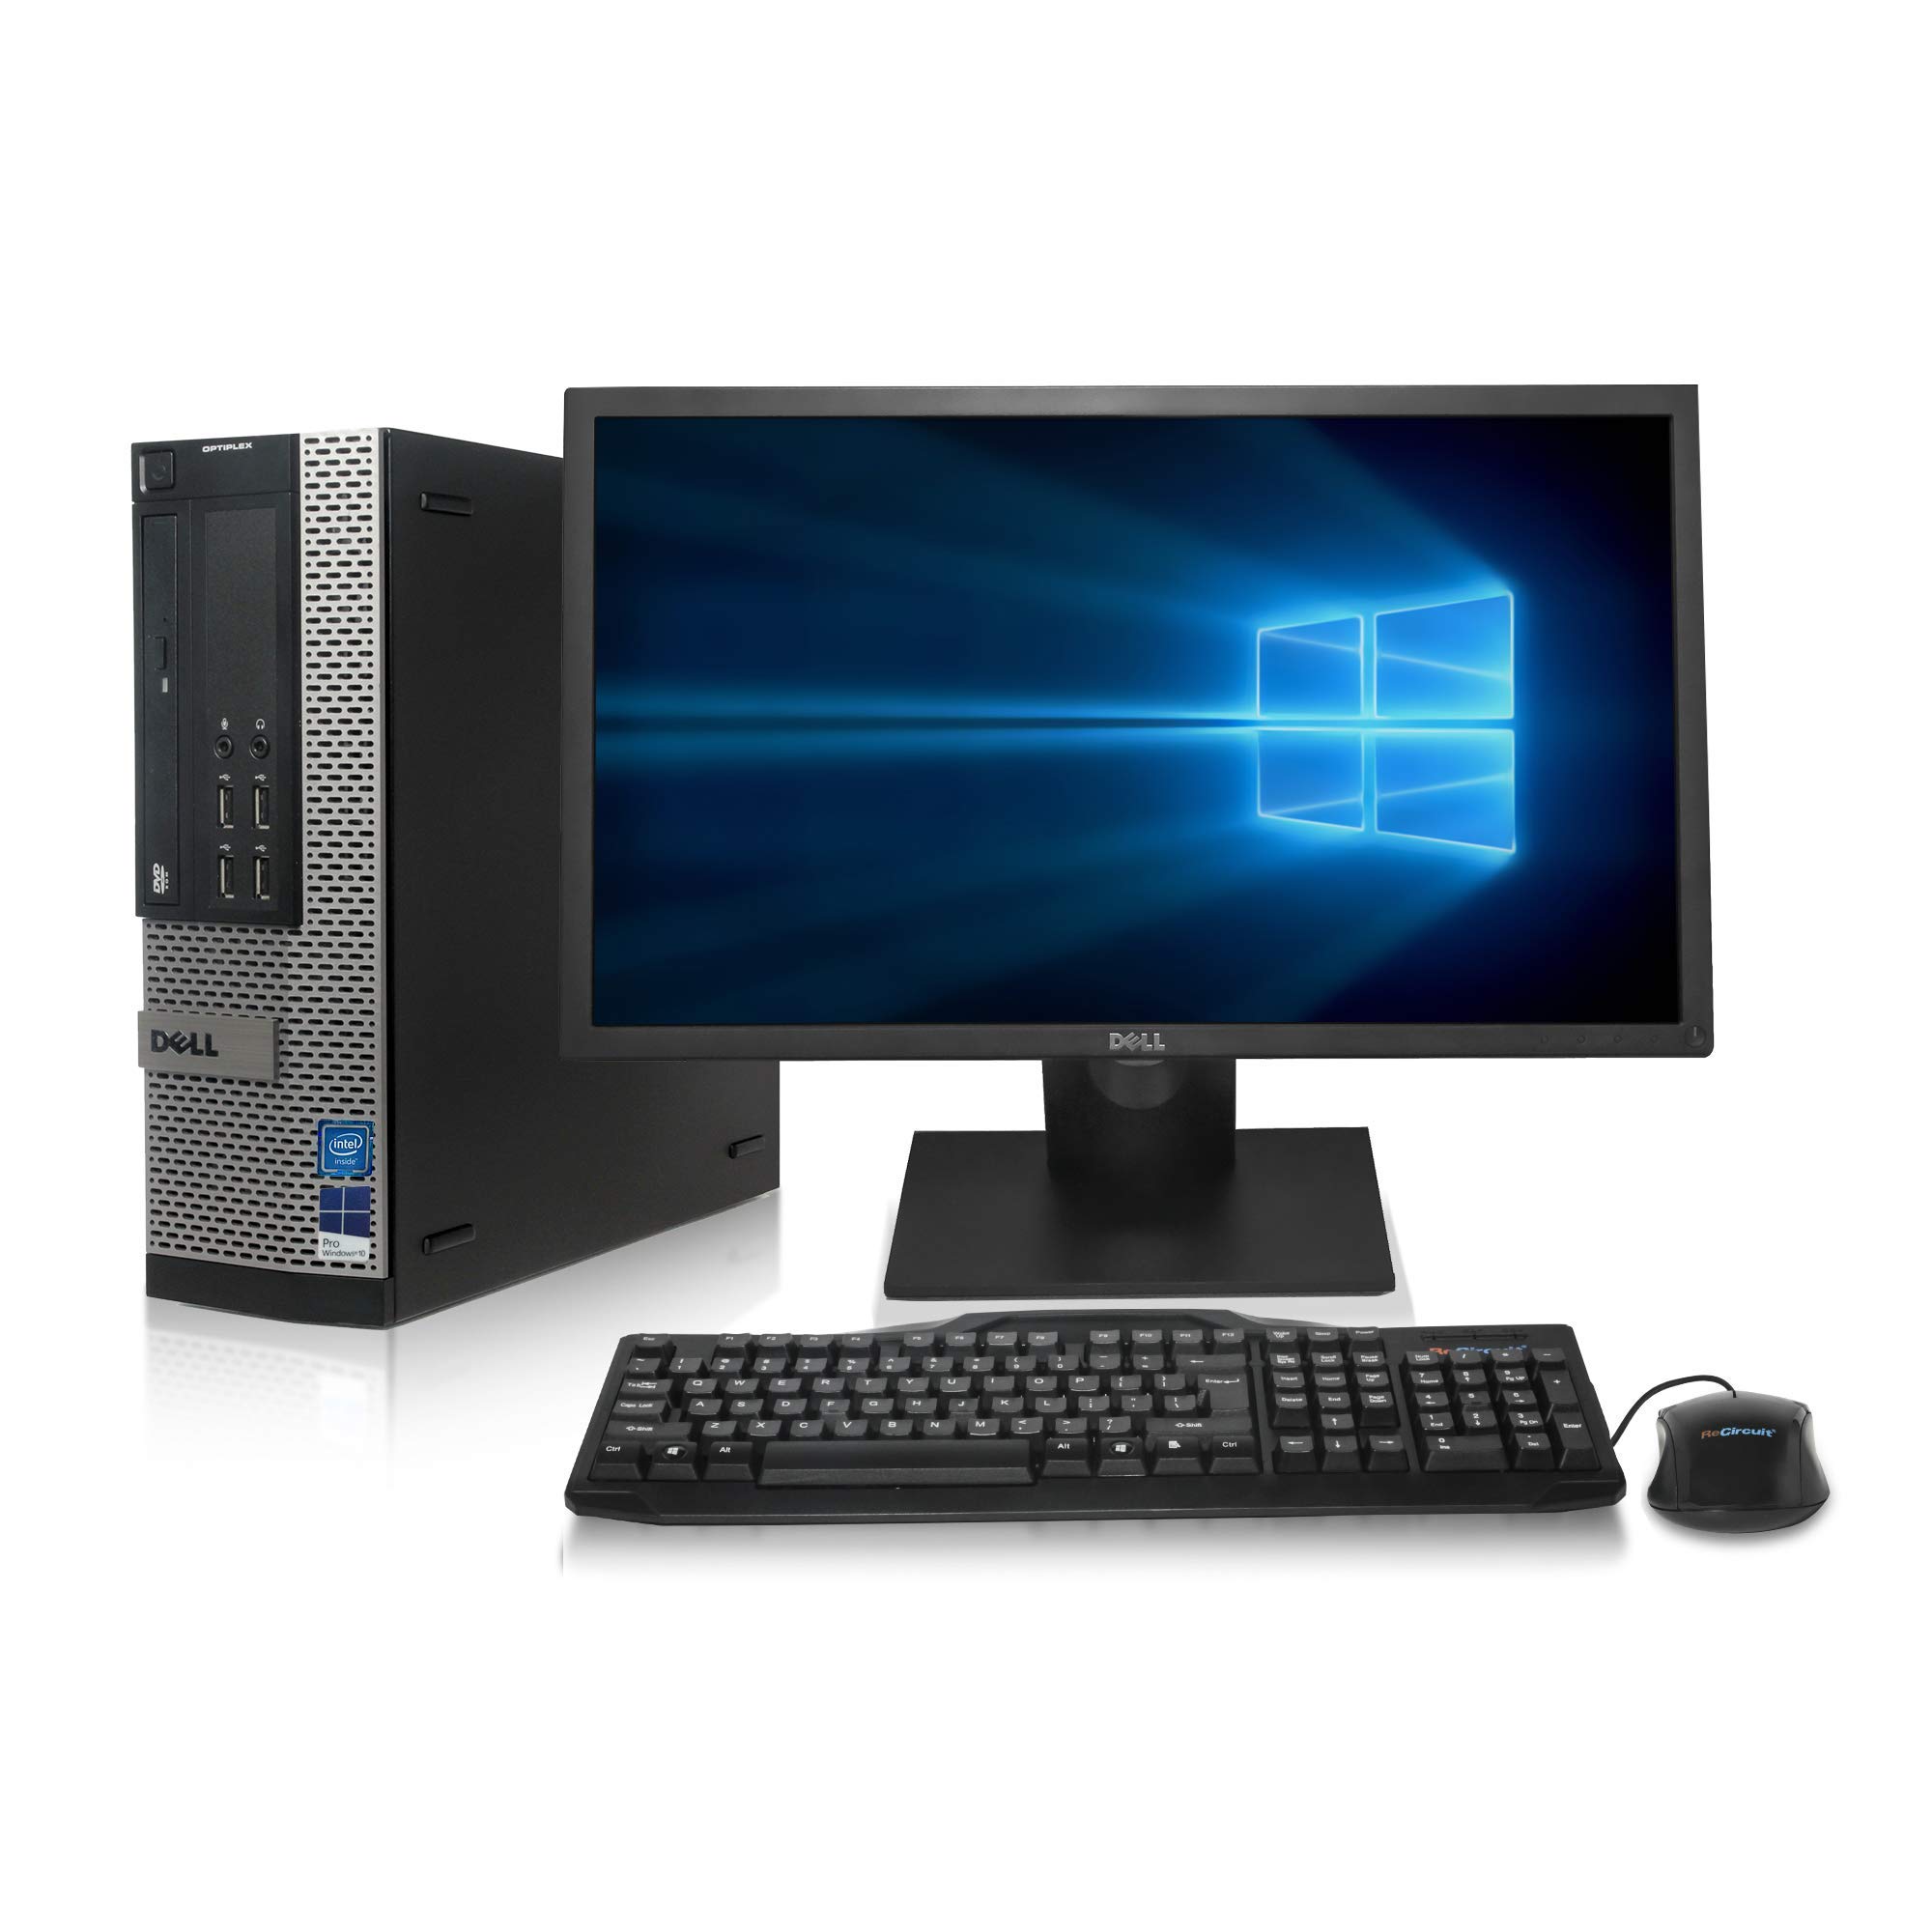 Dell Optiplex 9010 Desktop Computer - Intel Core i7 3.4GHz, 16GB DDR3, New 1TB SSD, Windows 10 Pro 64-Bit, WiFi + New 24 LCD Monitor (Renewed)